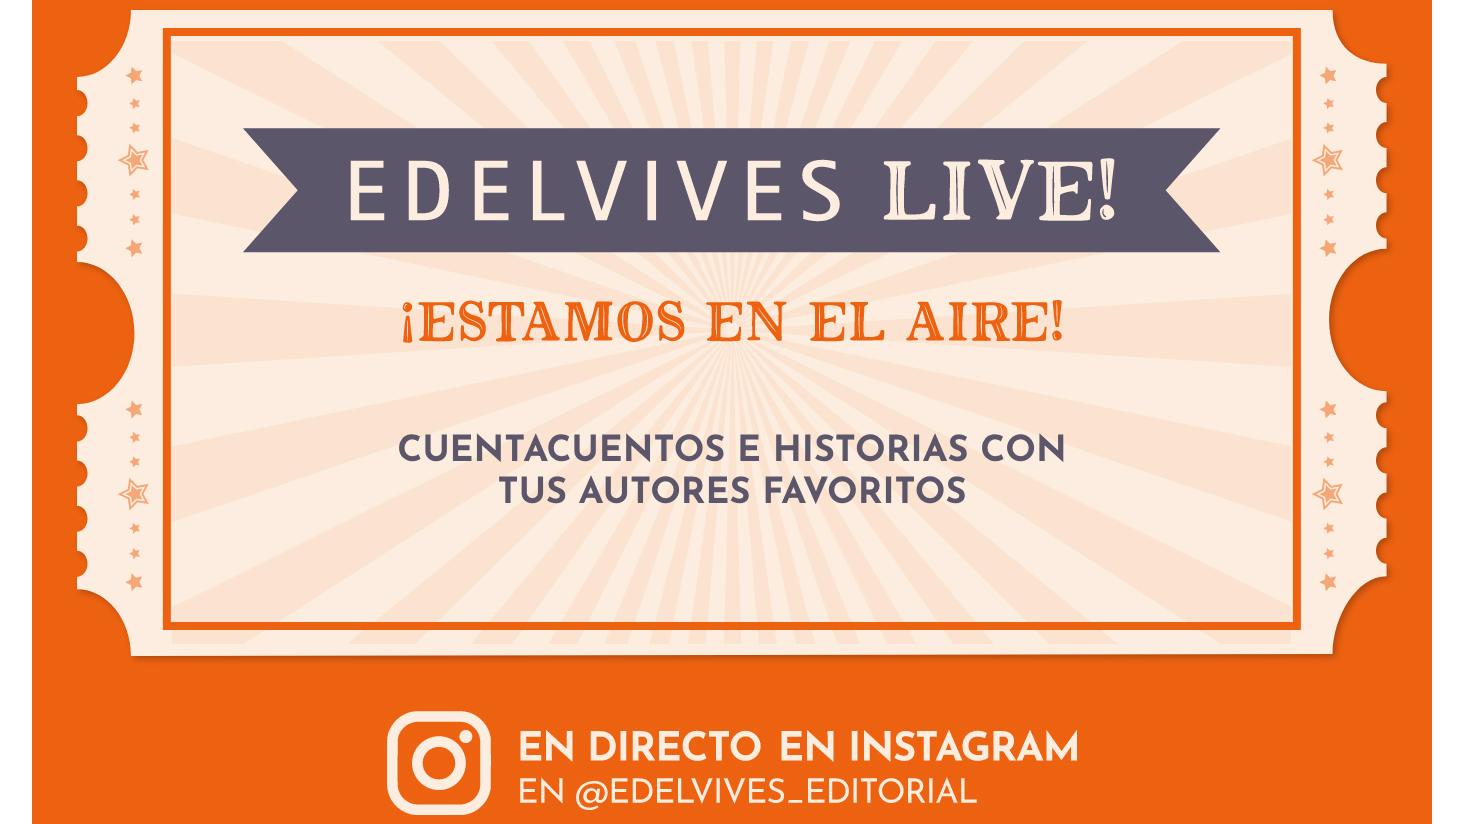 Edelvives Live! Cuentacuentos e historias en directo